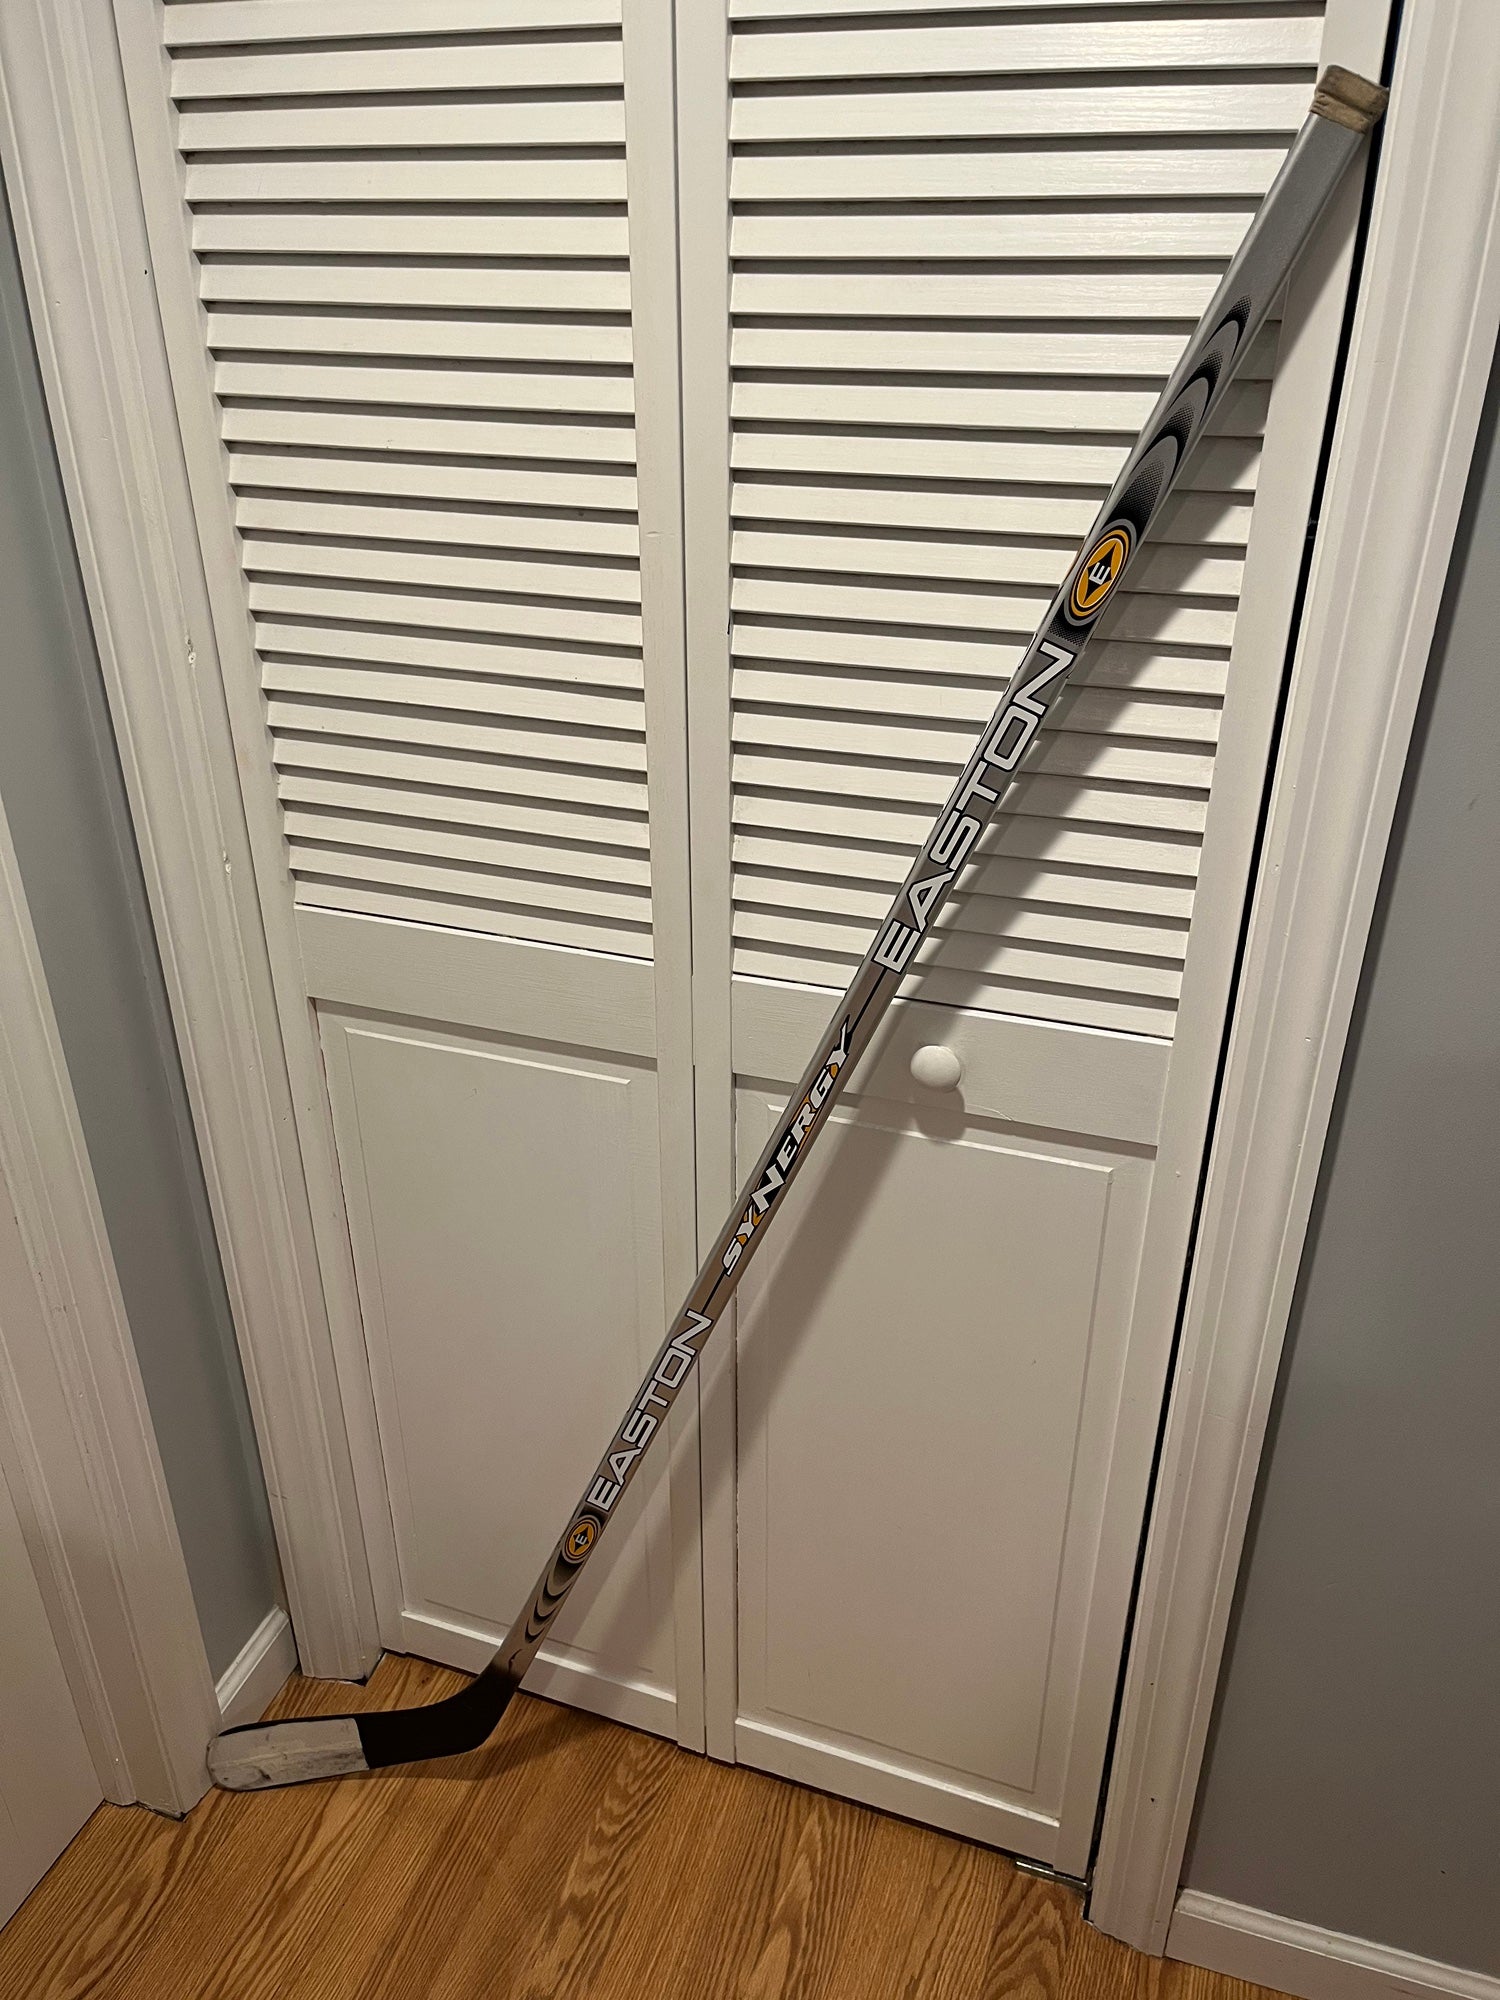 Easton Synergy Si-Core RH Hockey Stick 100 Flex Shanahan